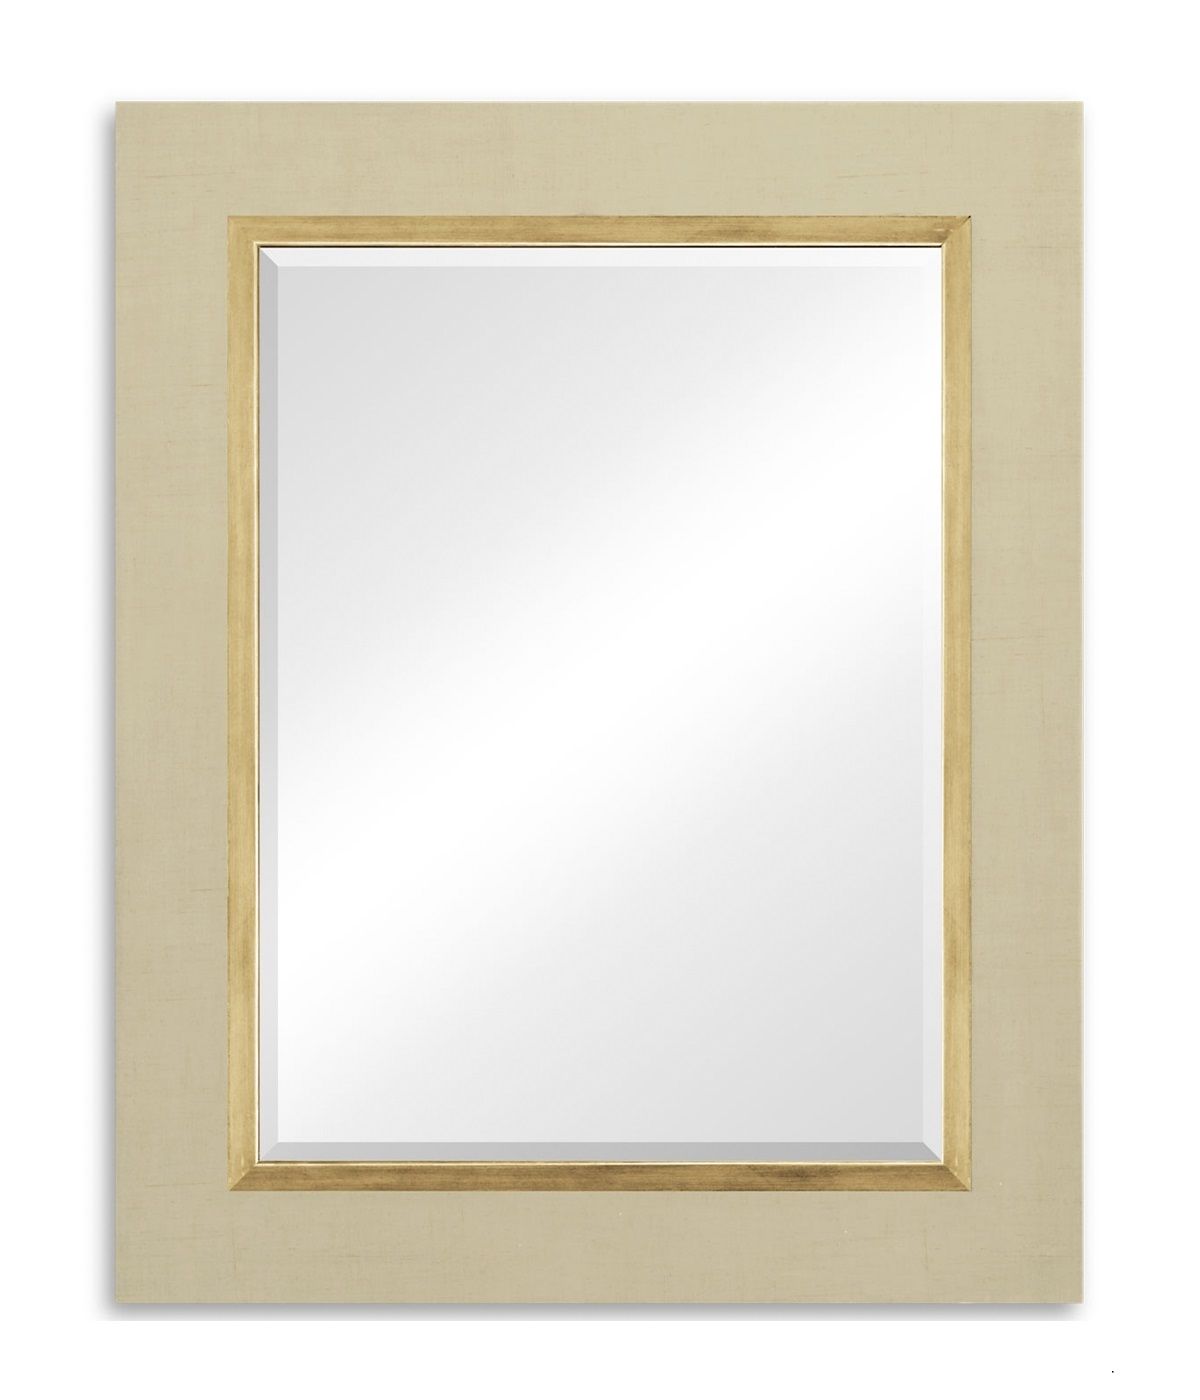 Cream Wall Mirror Cream Wall Mirrors Cream Living Room Mirror Regarding Cream Wall Mirror (View 10 of 15)